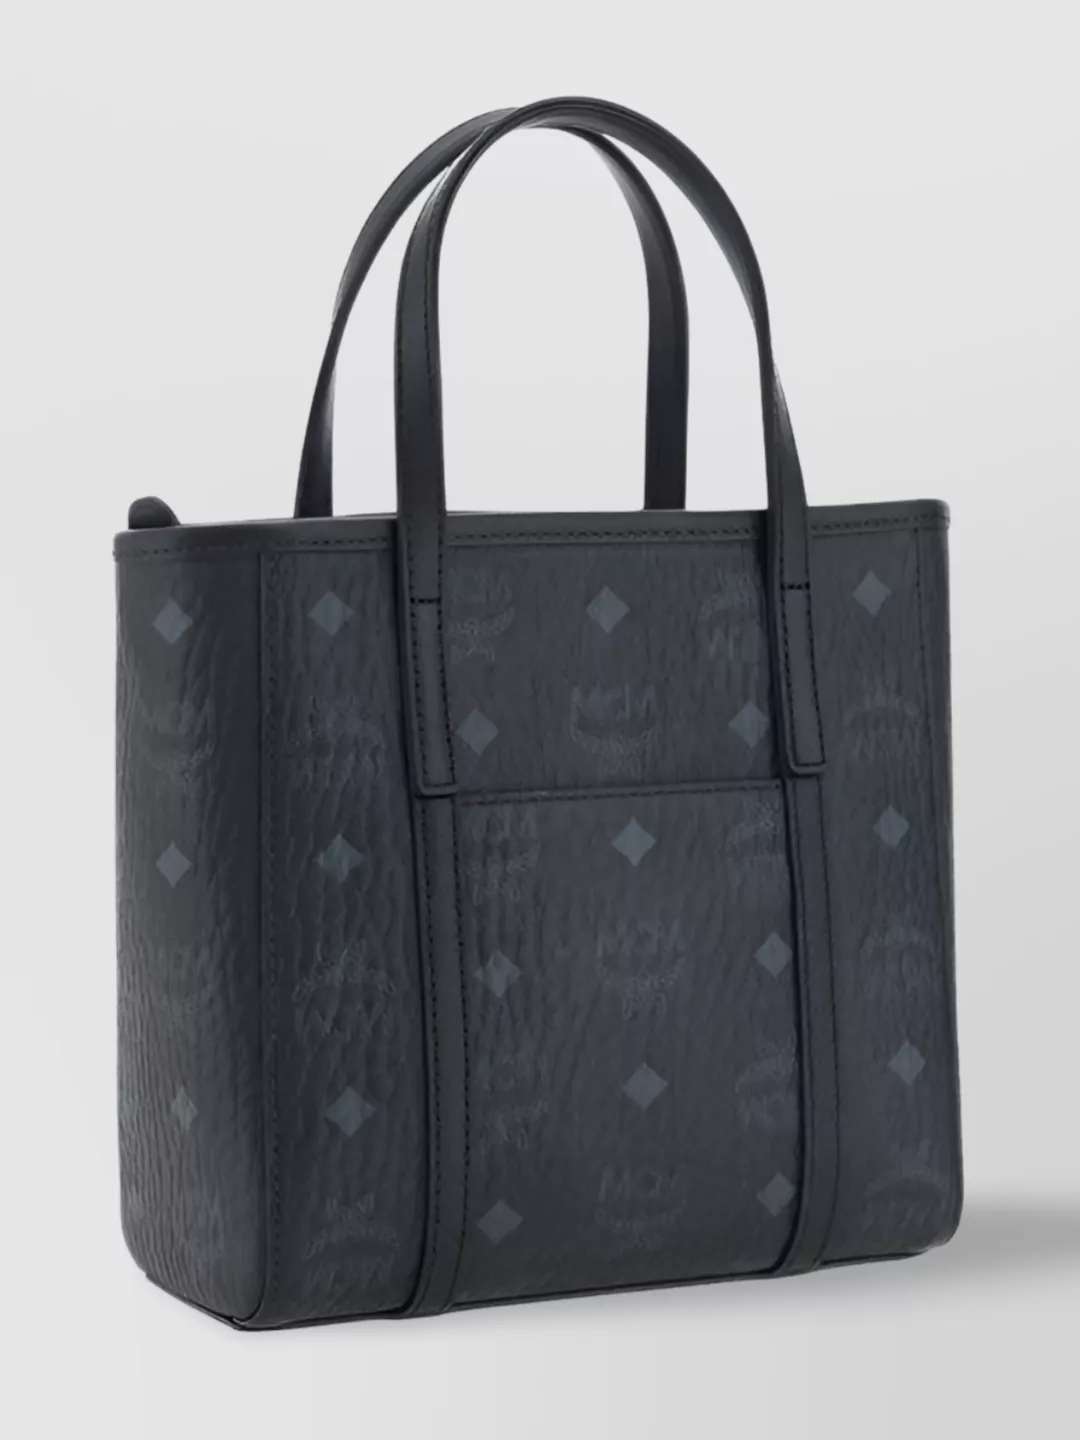 Mcm Mini Shopper Tote Bag Monogram In Black